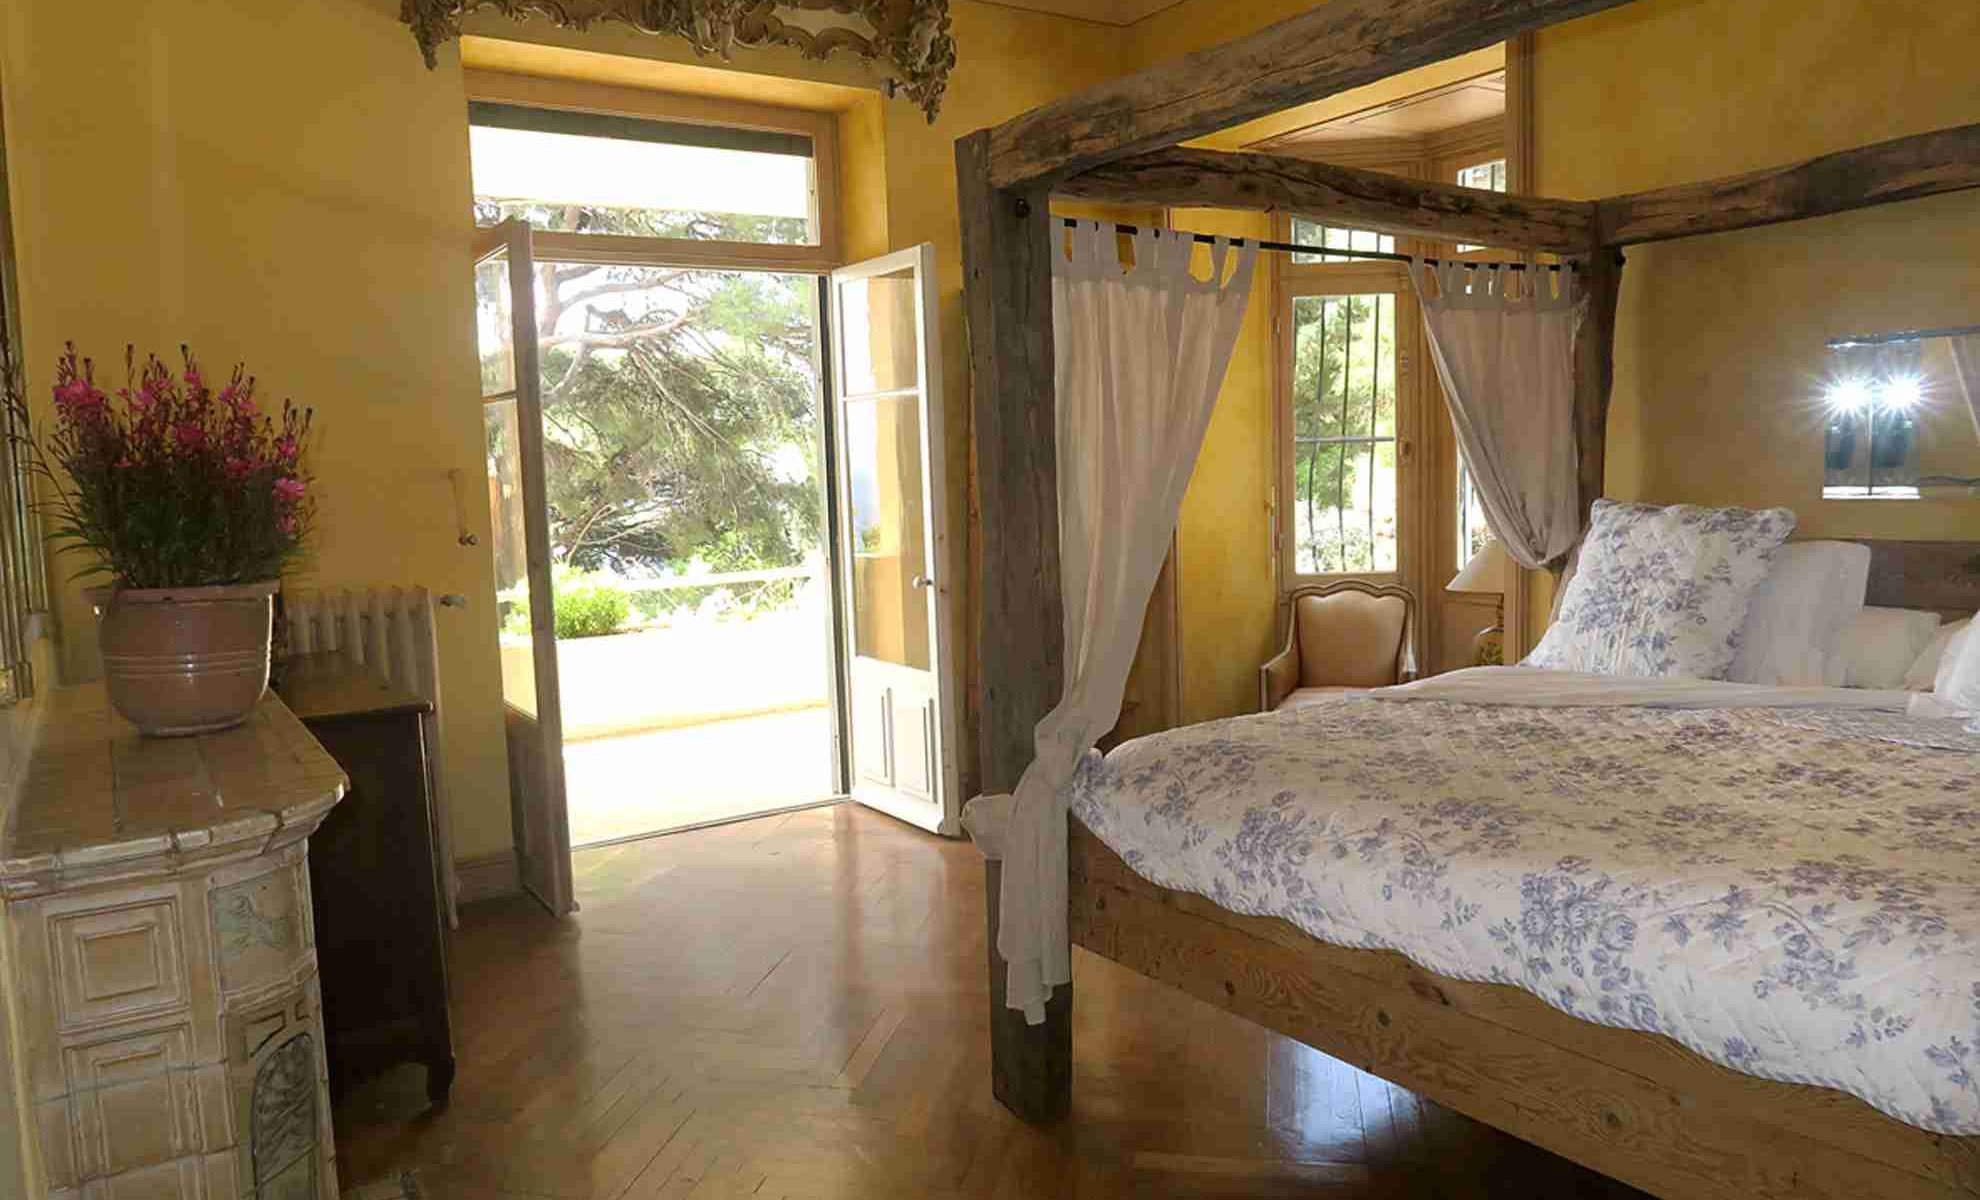 Book a stay in Lavandou, near St Tropez